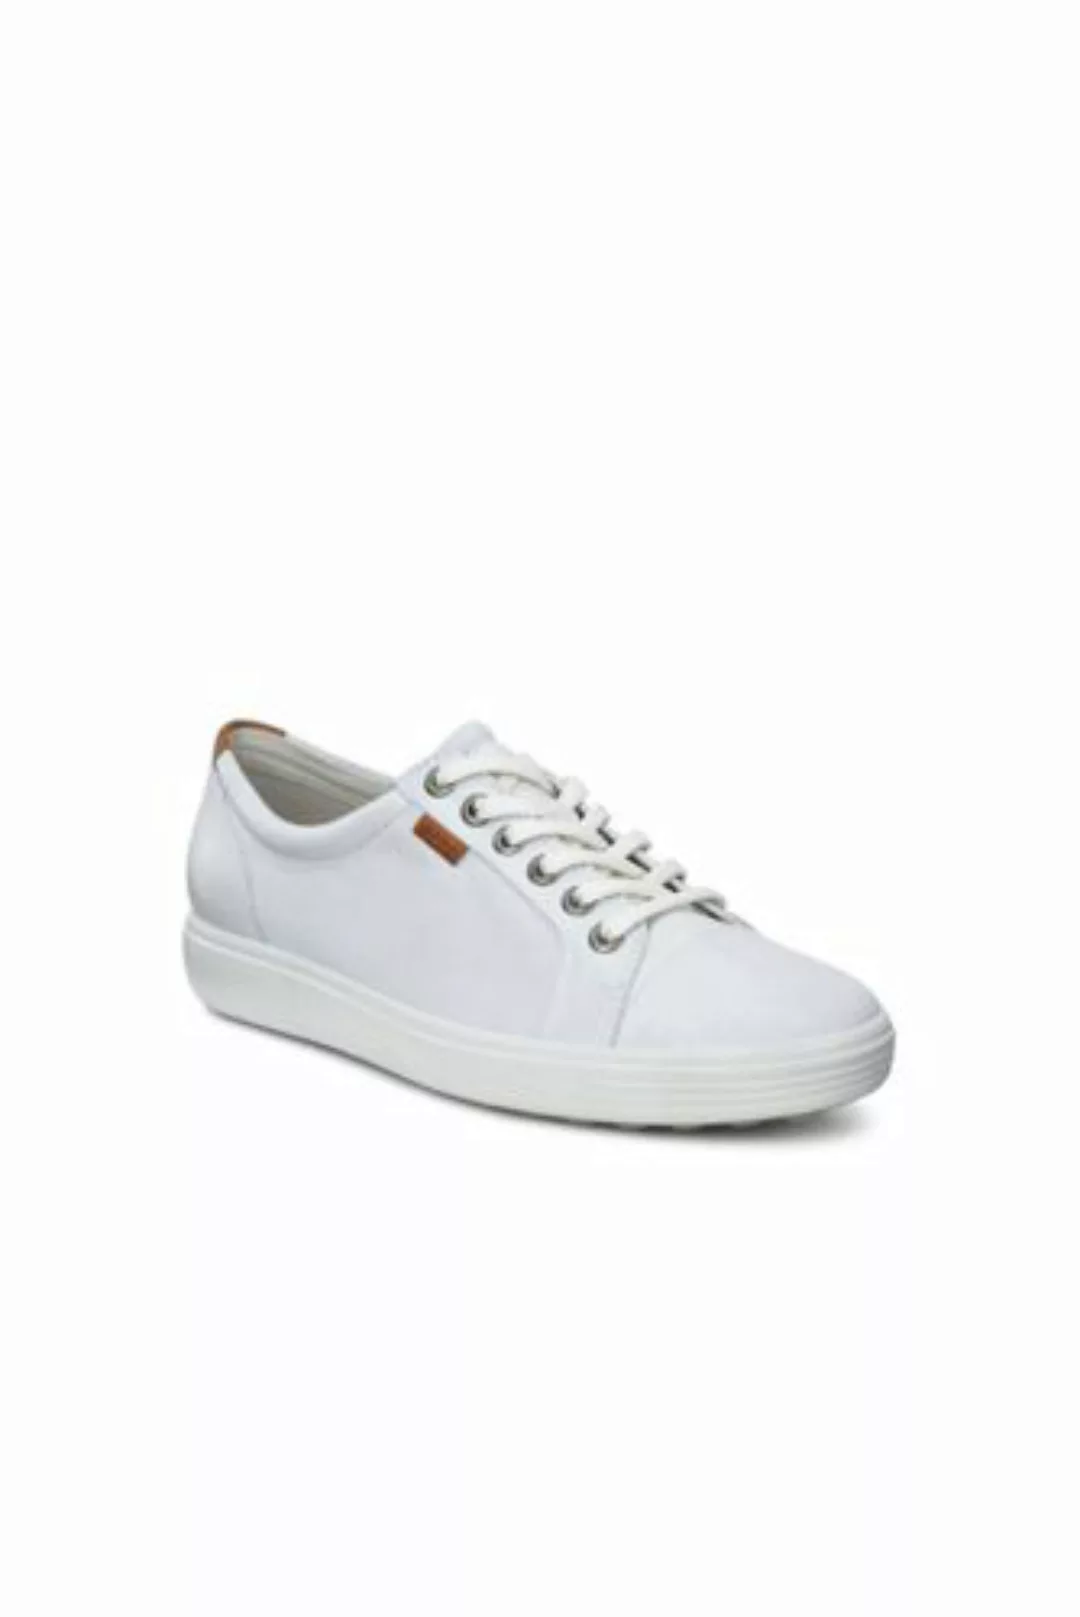 ECCO Sneaker SOFT 7, Damen, Größe: 43 Normal, Weiß, Leder, by Lands' End, W günstig online kaufen